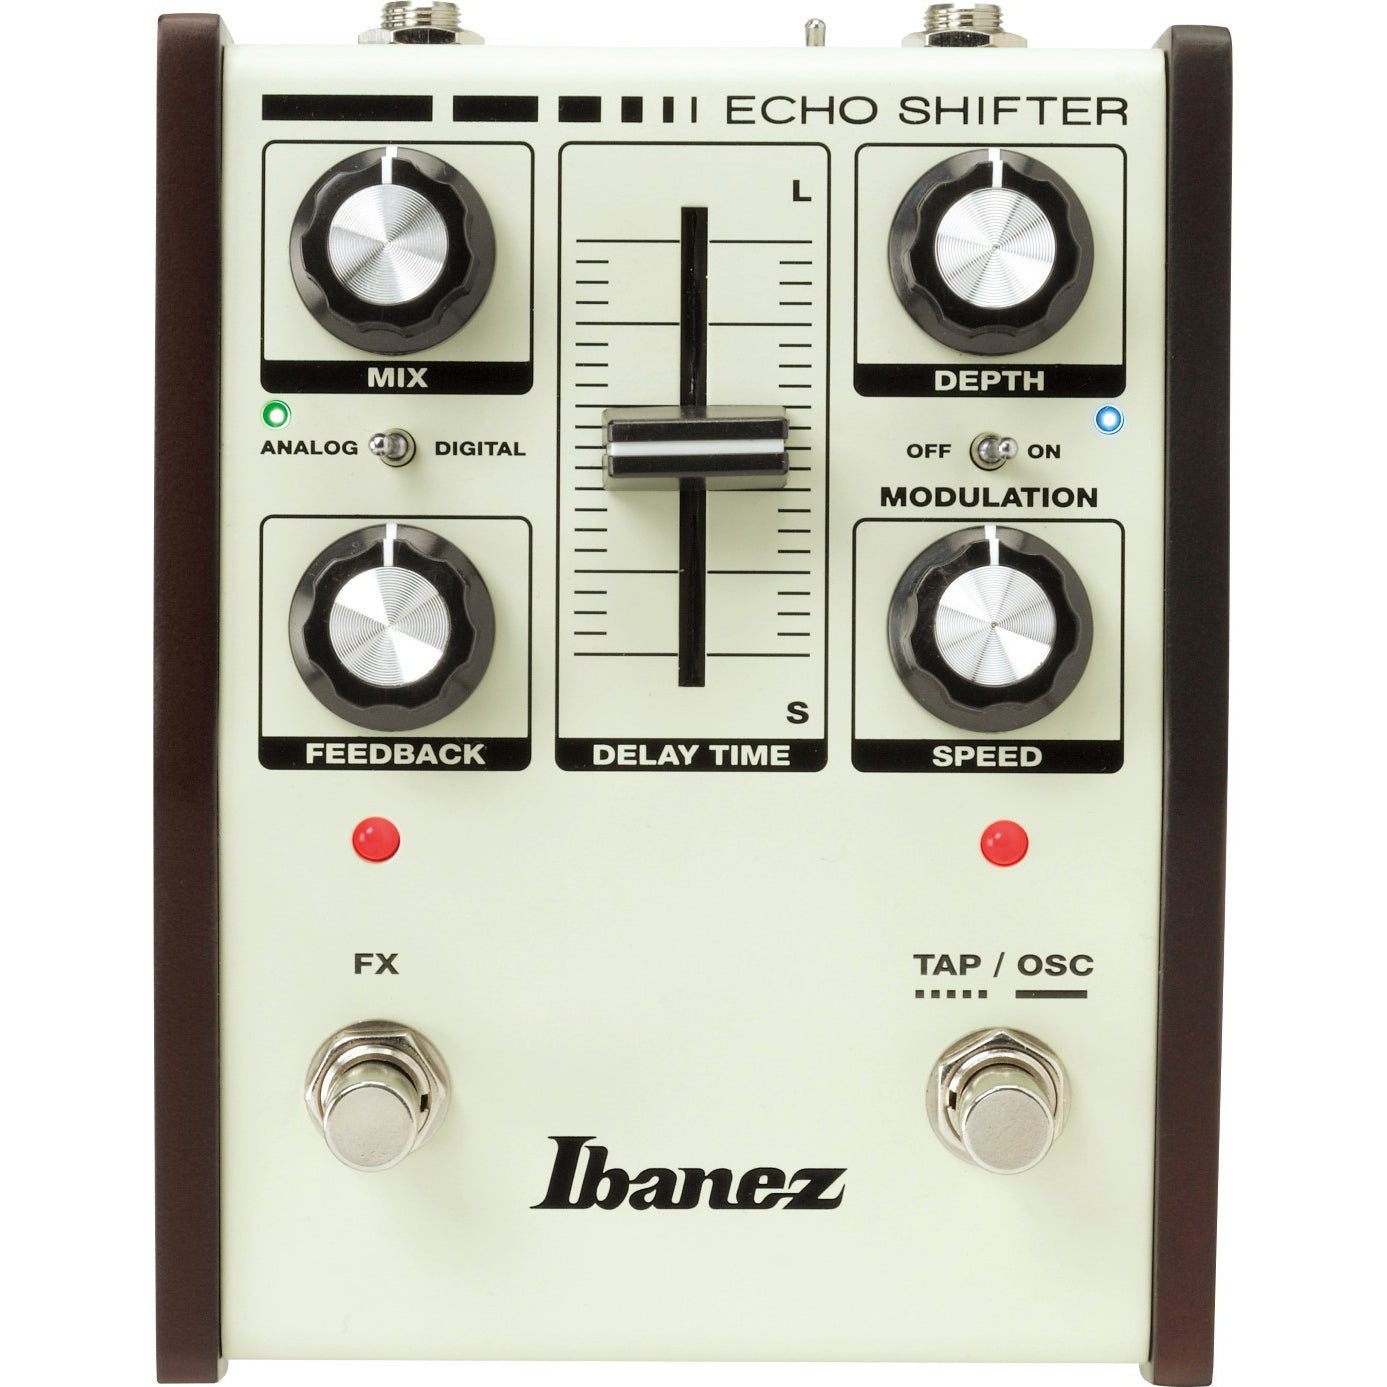 Ibanez ES3 Echo Shifter delay met modulatie